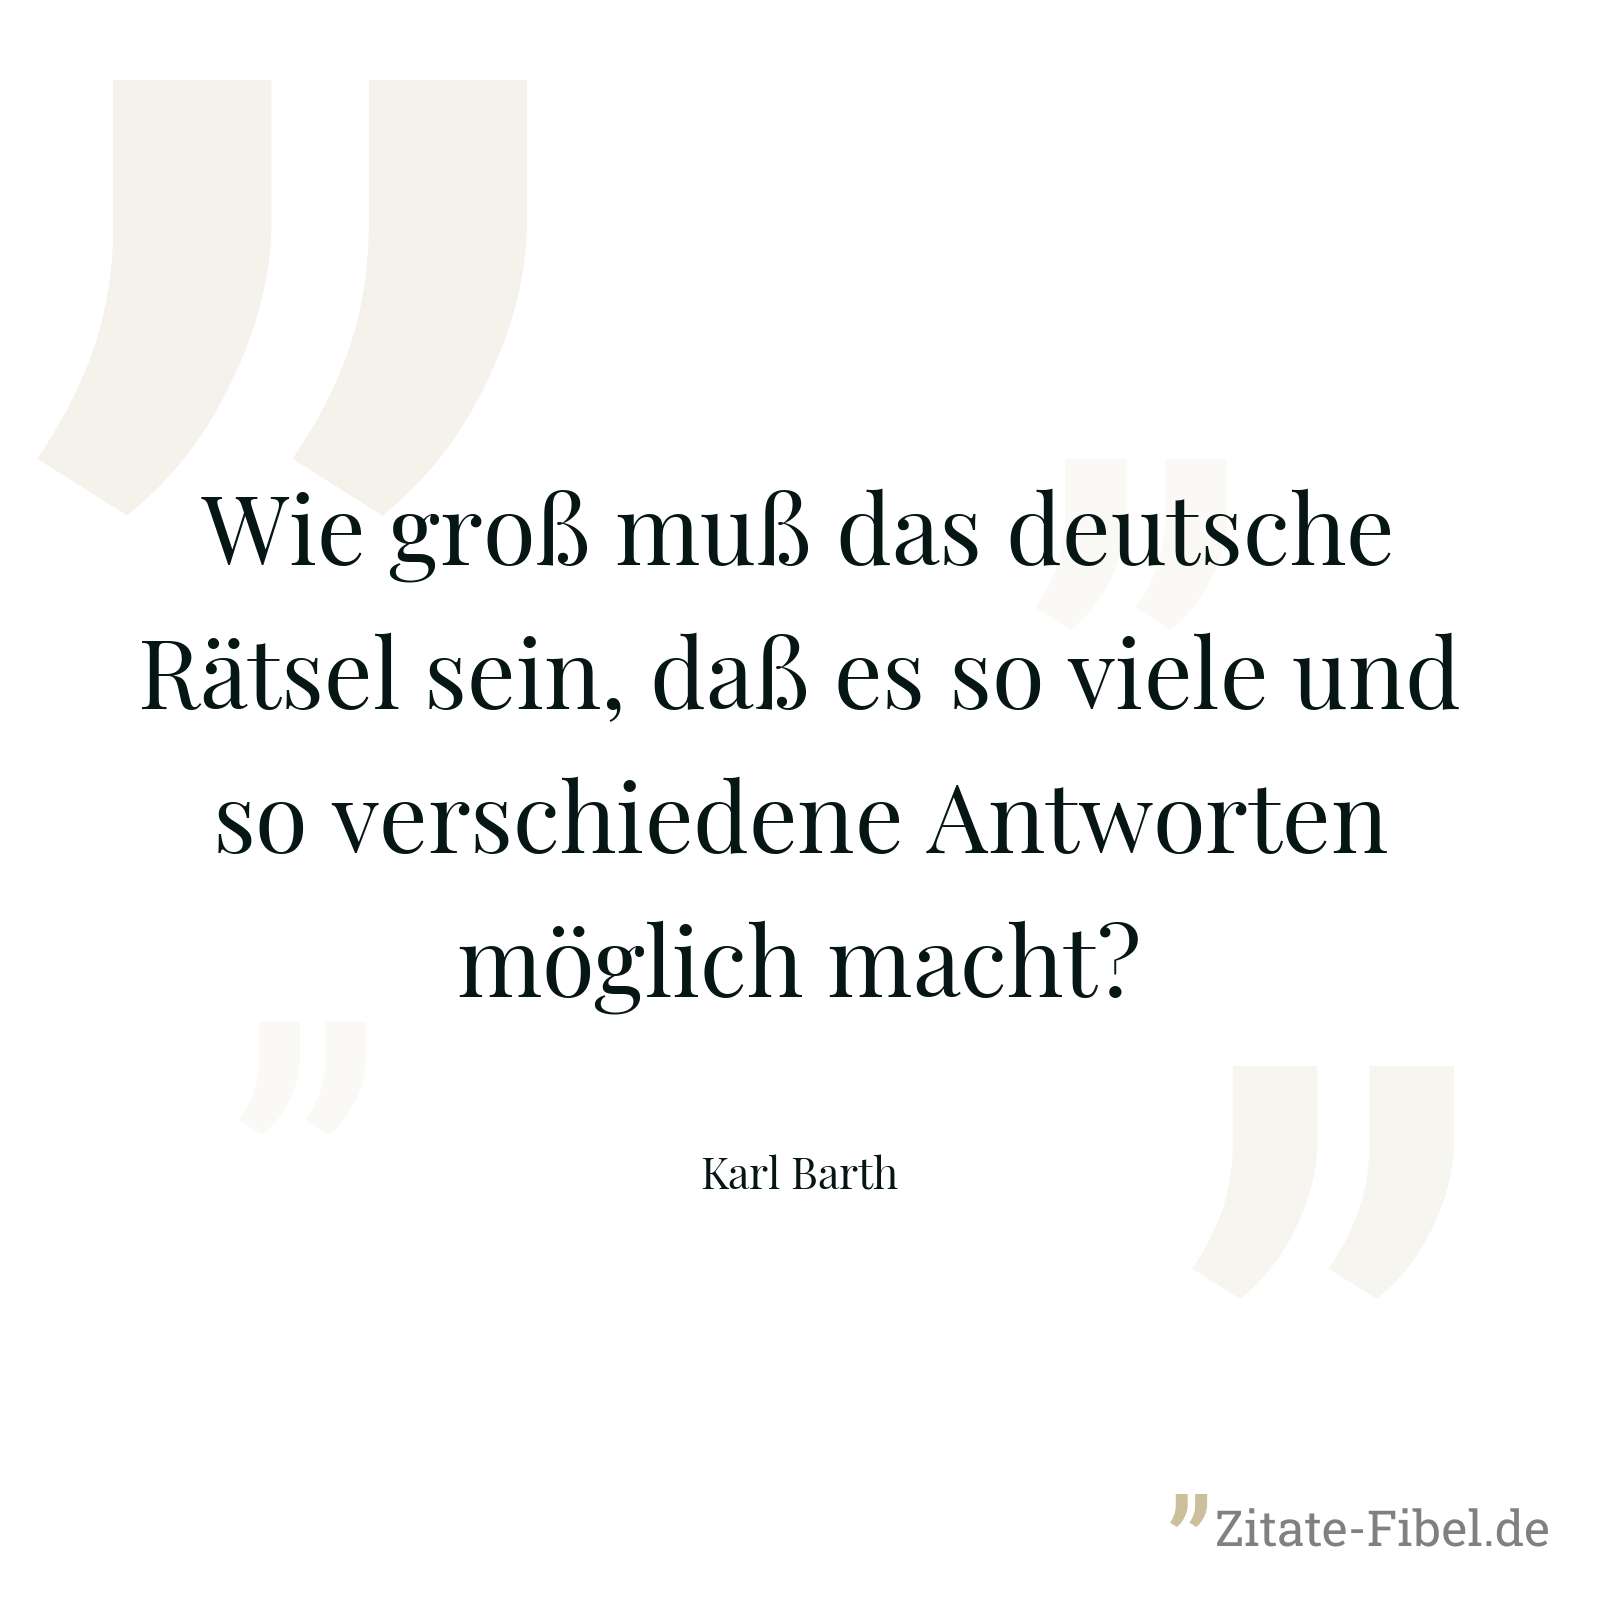 Wie groß muß das deutsche Rätsel sein, daß es so viele und so verschiedene Antworten möglich macht? - Karl Barth